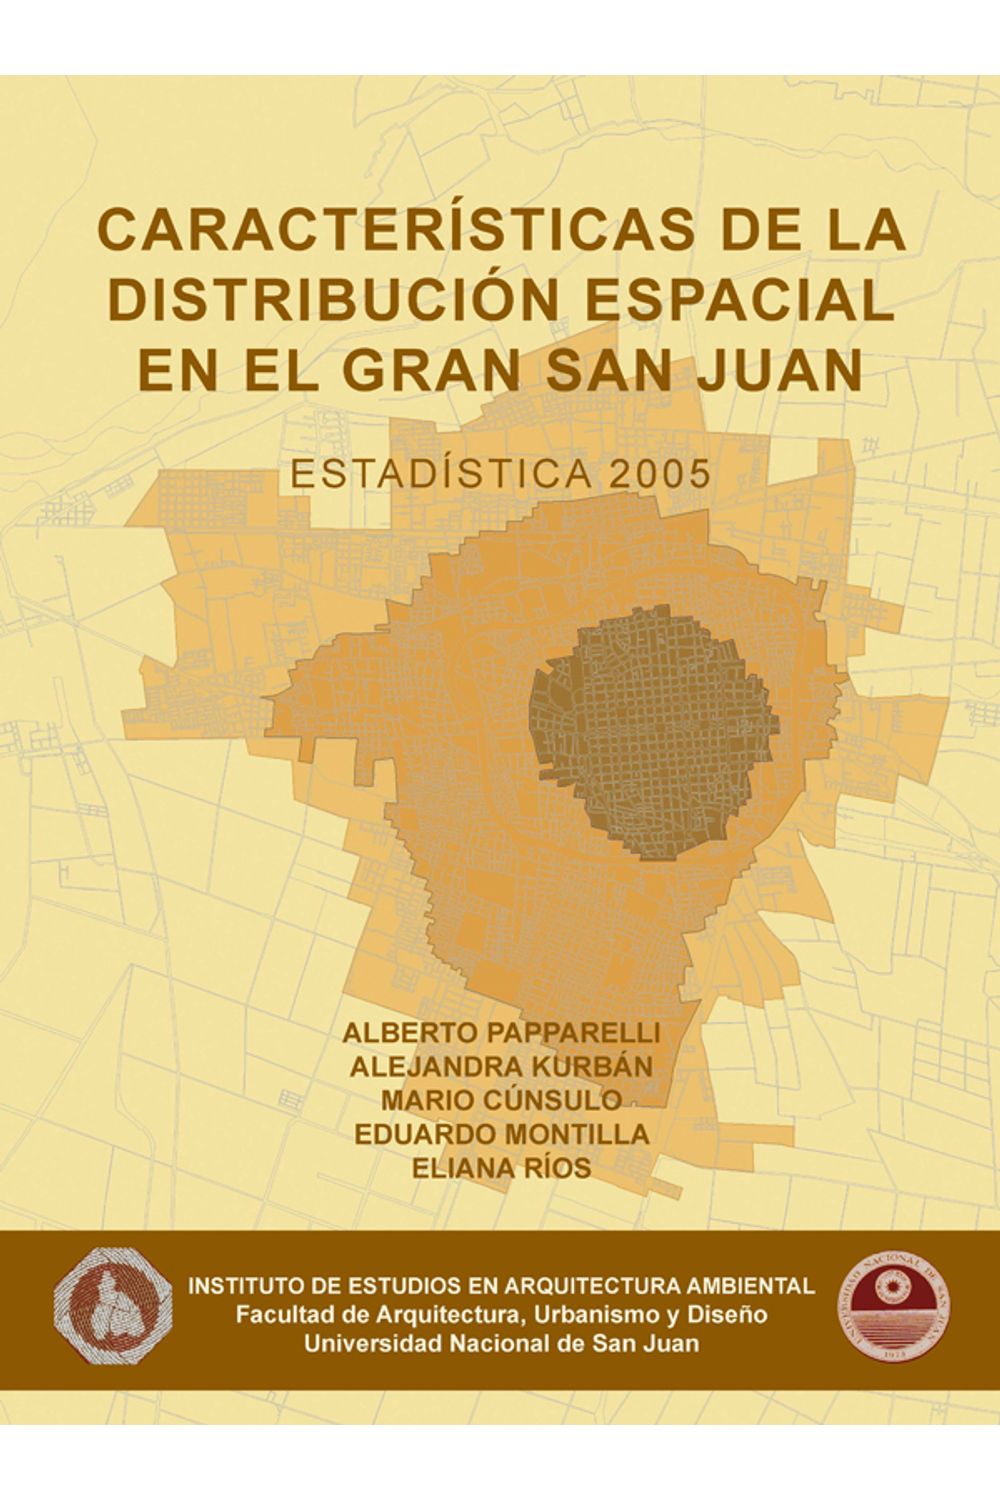 bm-caracteristicas-de-la-distribucion-espacial-en-el-gran-san-juan-2005-nobukodiseno-editorial-9789875840799